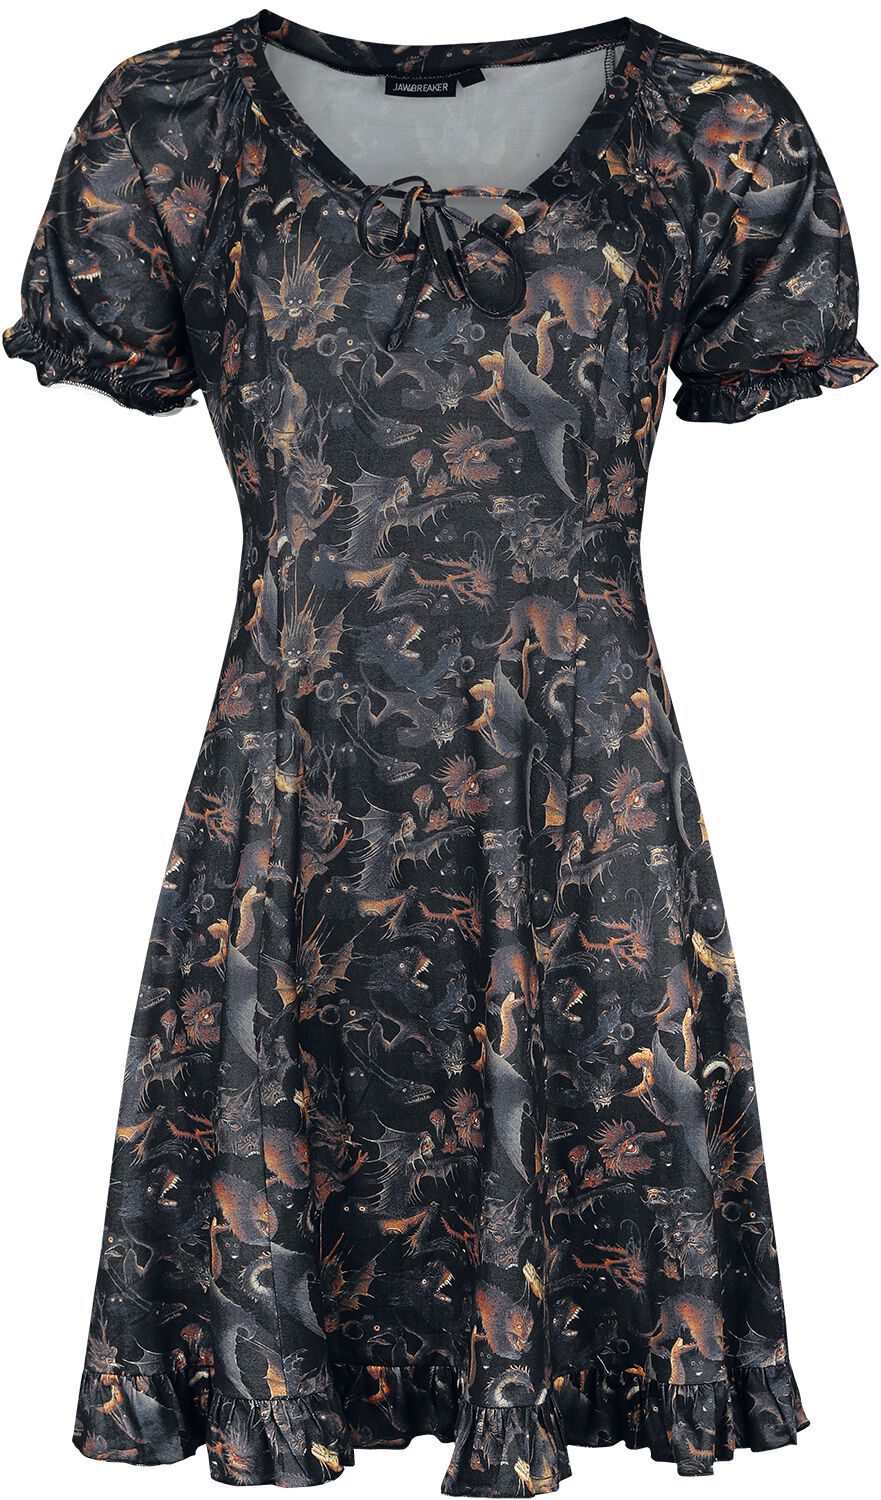 Jawbreaker - Gothic Kurzes Kleid - Paradise Lost Dress - XS bis 4XL - für Damen - Größe L - multicolor